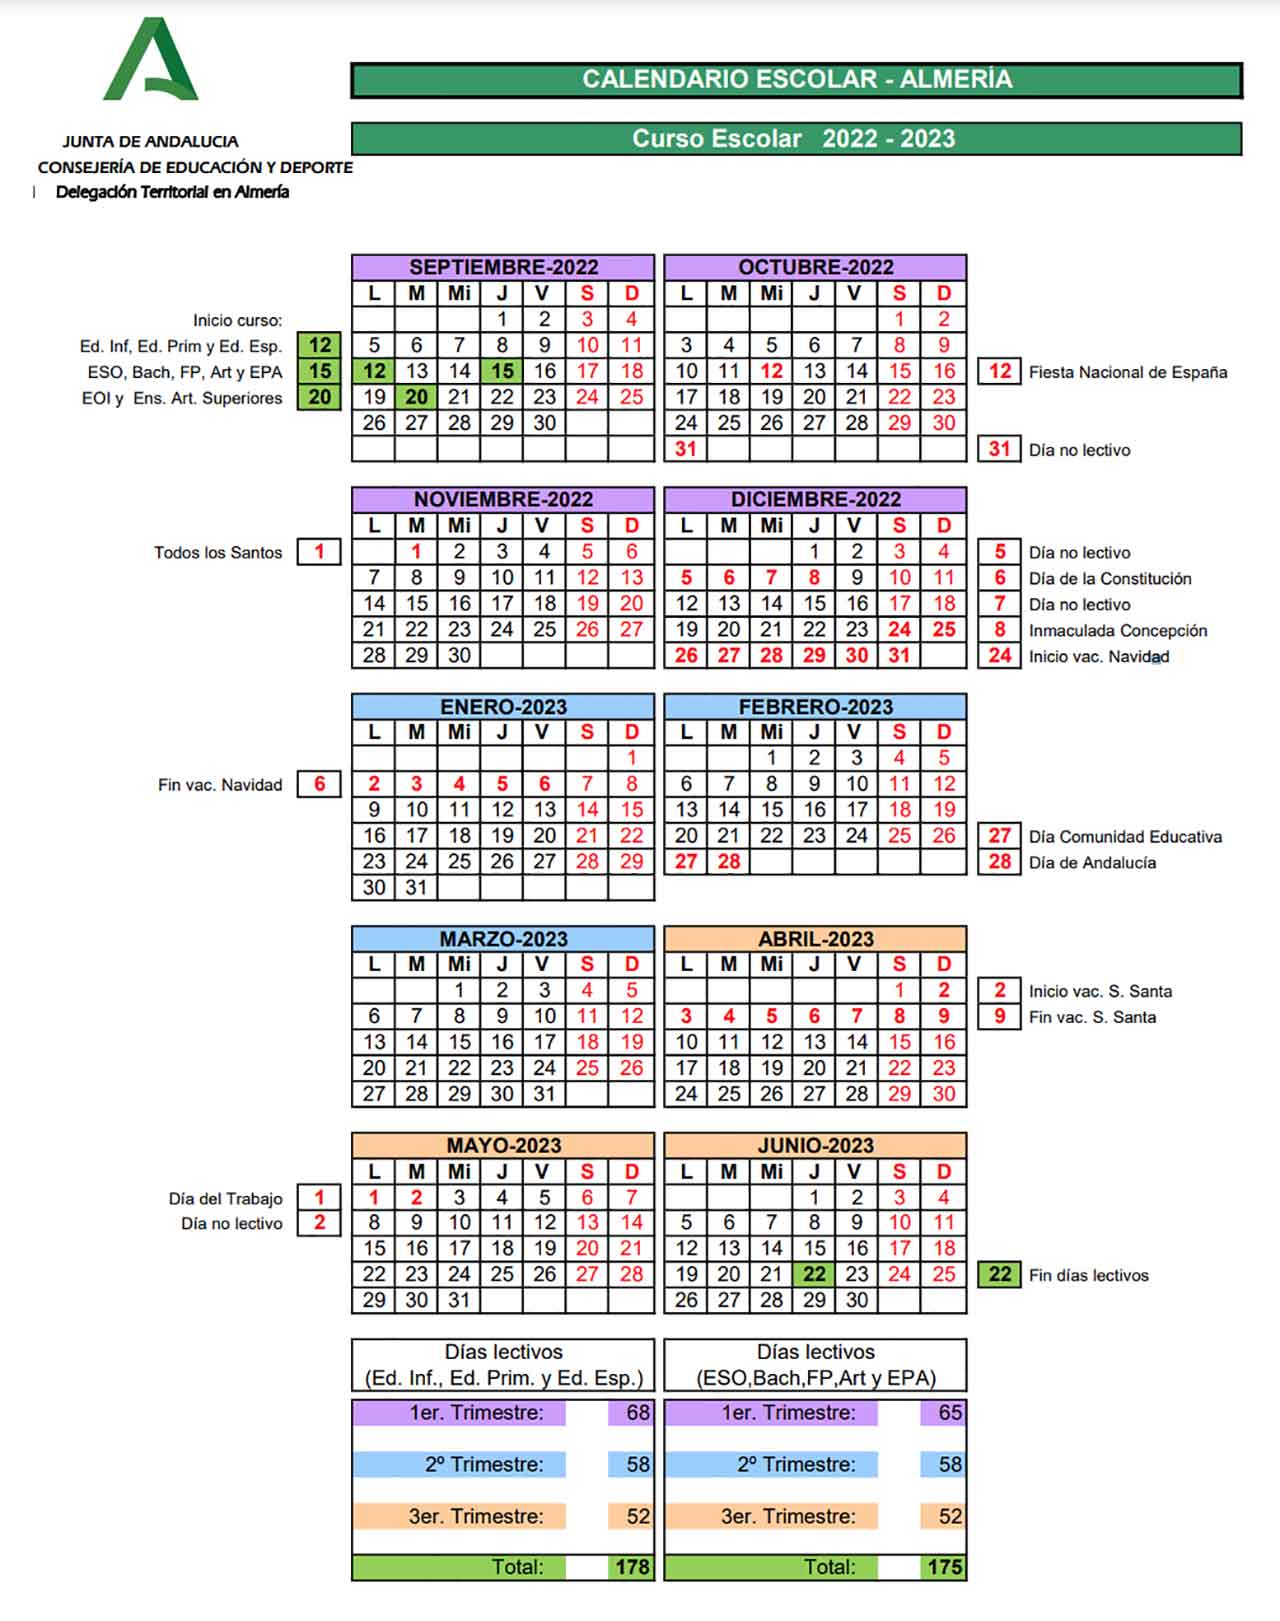 Calendario escolar Almeria 2022-2023